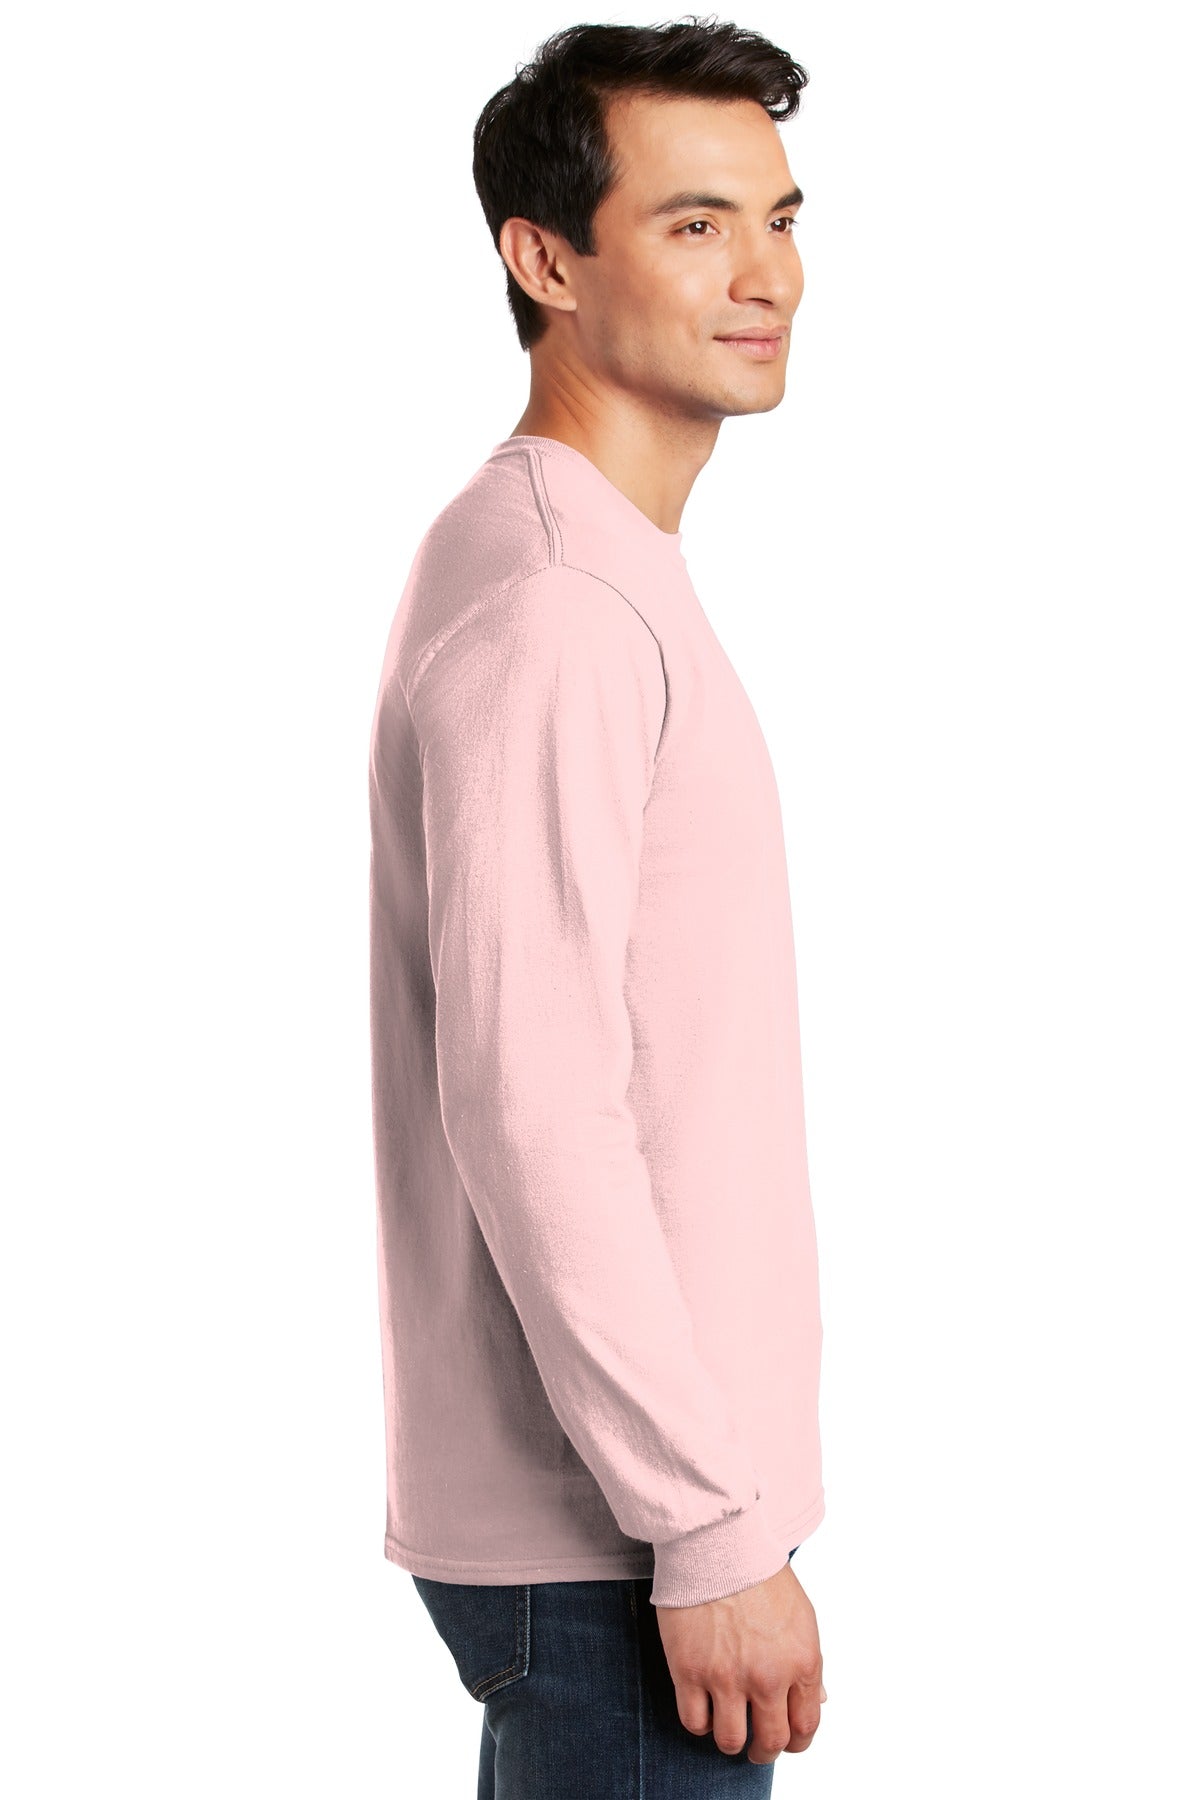 Gildan - Ultra Cotton 100% US Cotton Long Sleeve T-Shirt. G2400